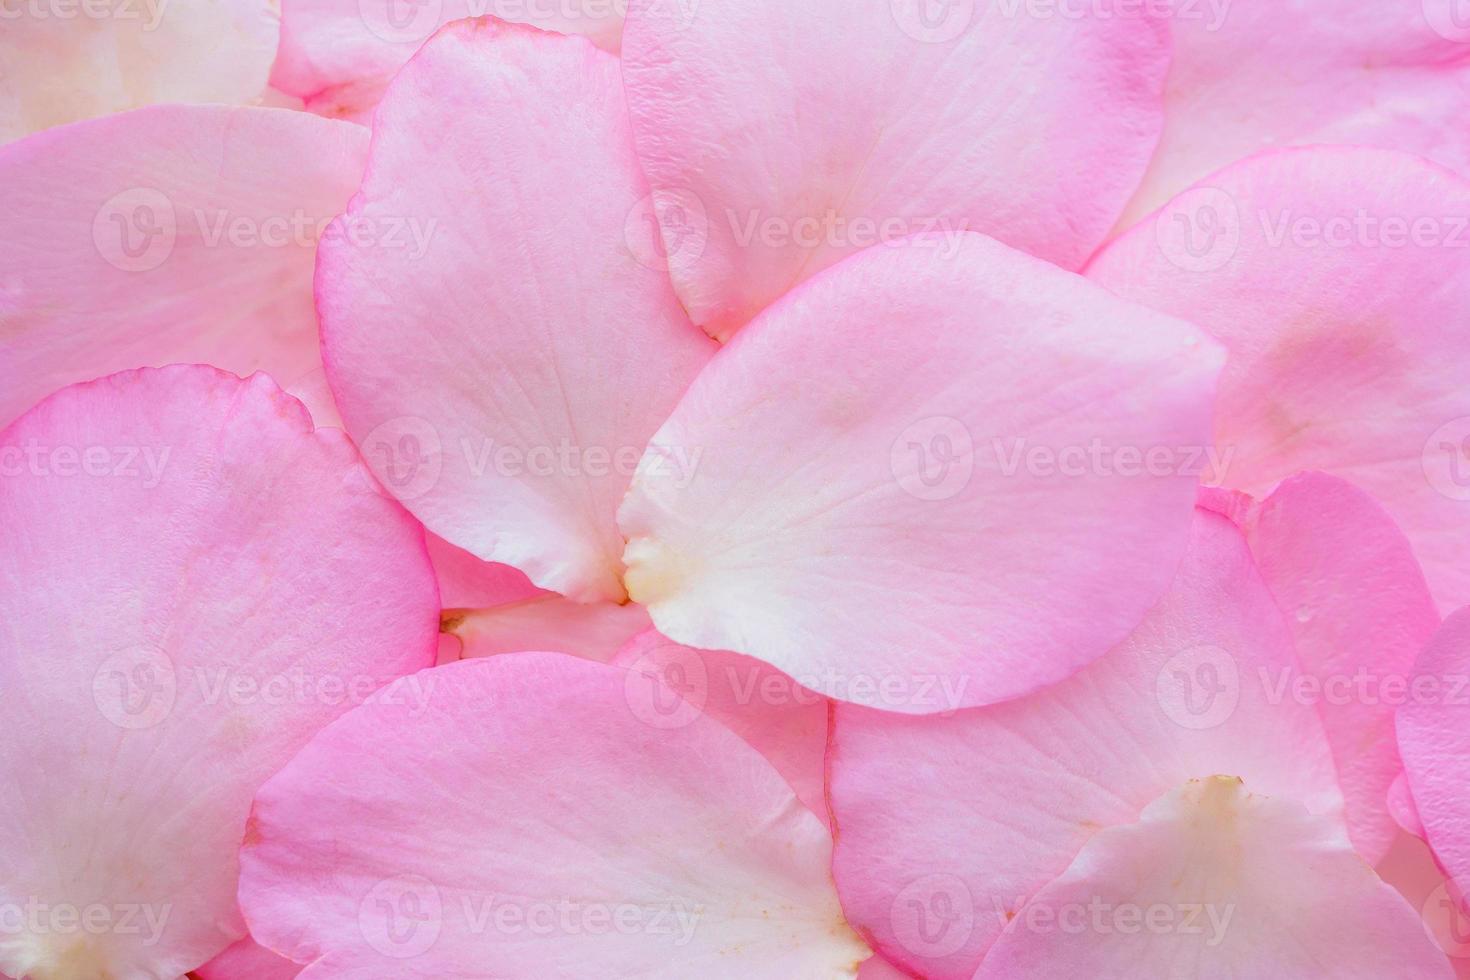 vackra rosa rosenblad för alla hjärtans dag bakgrund ovanifrån foto